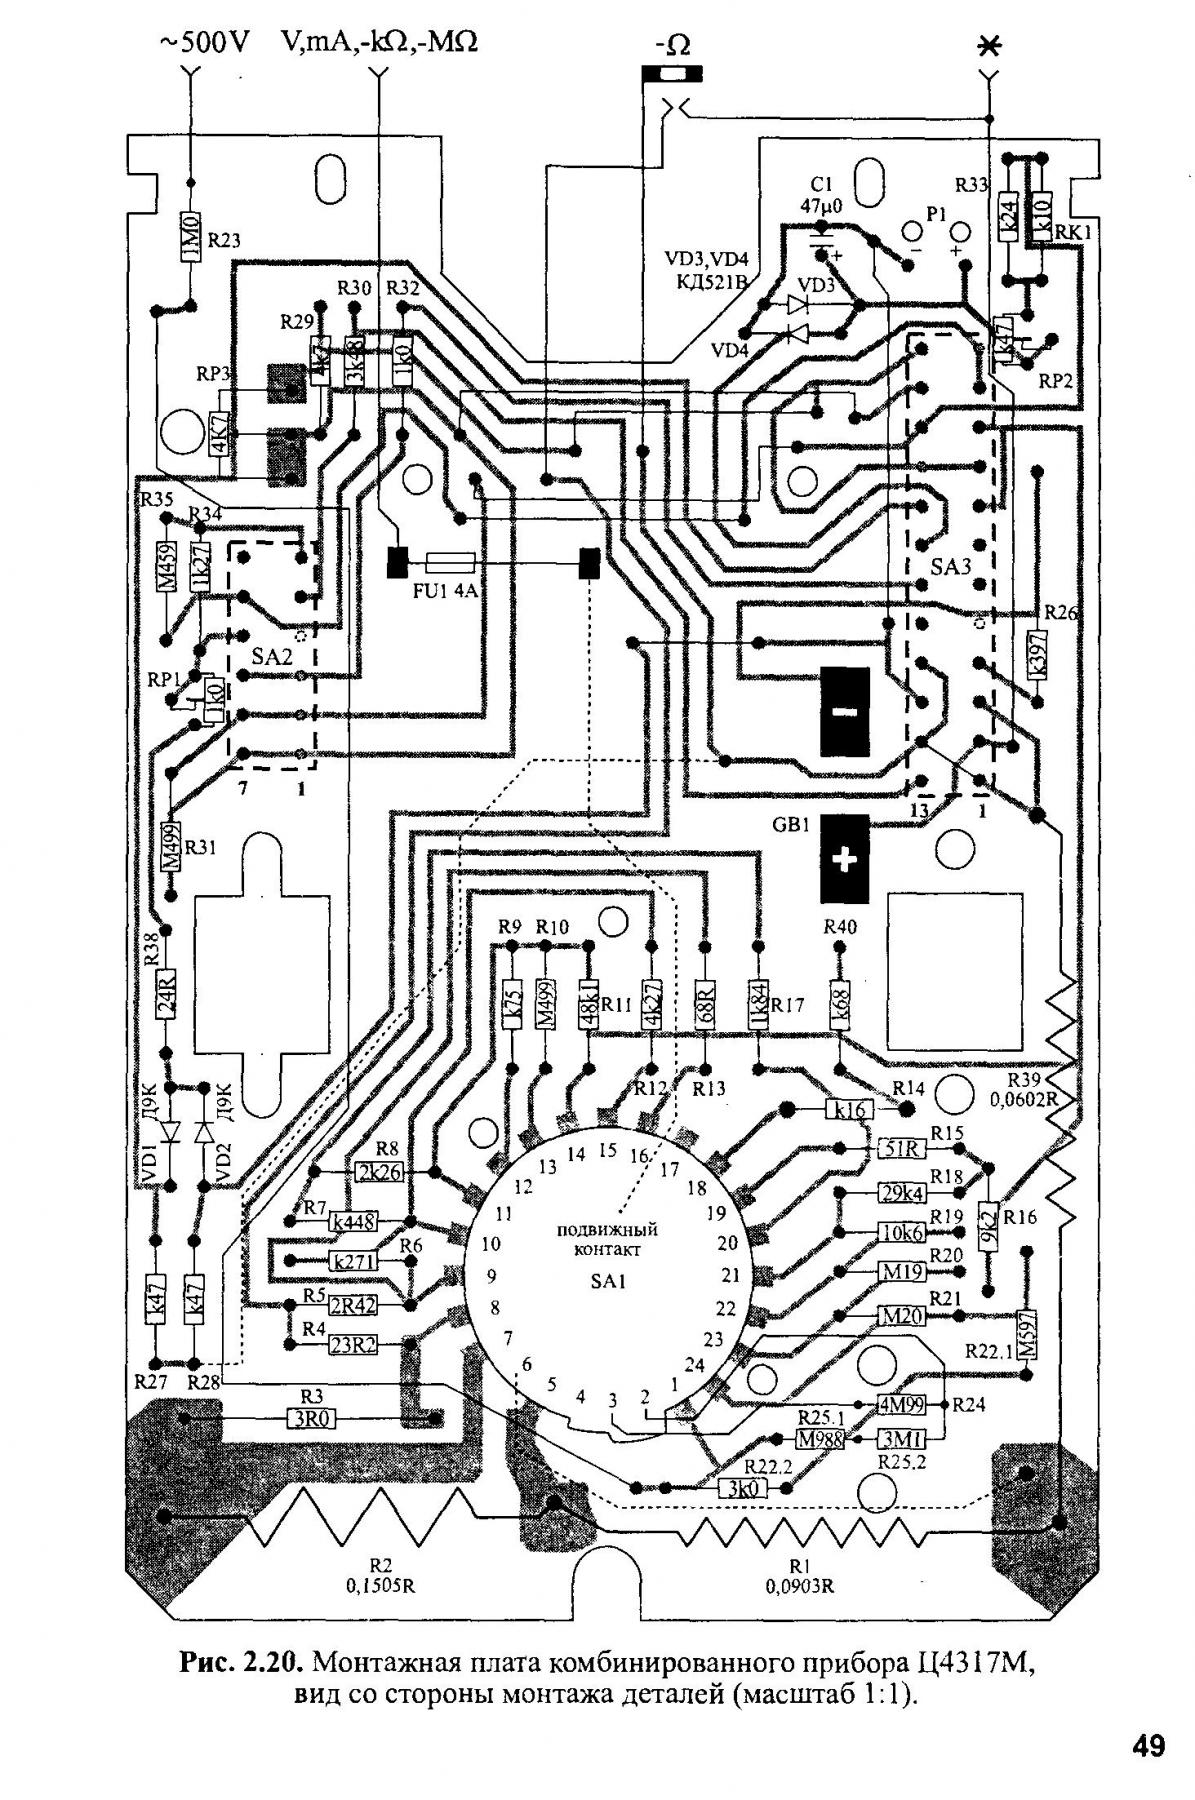 Ц4317 М circuit